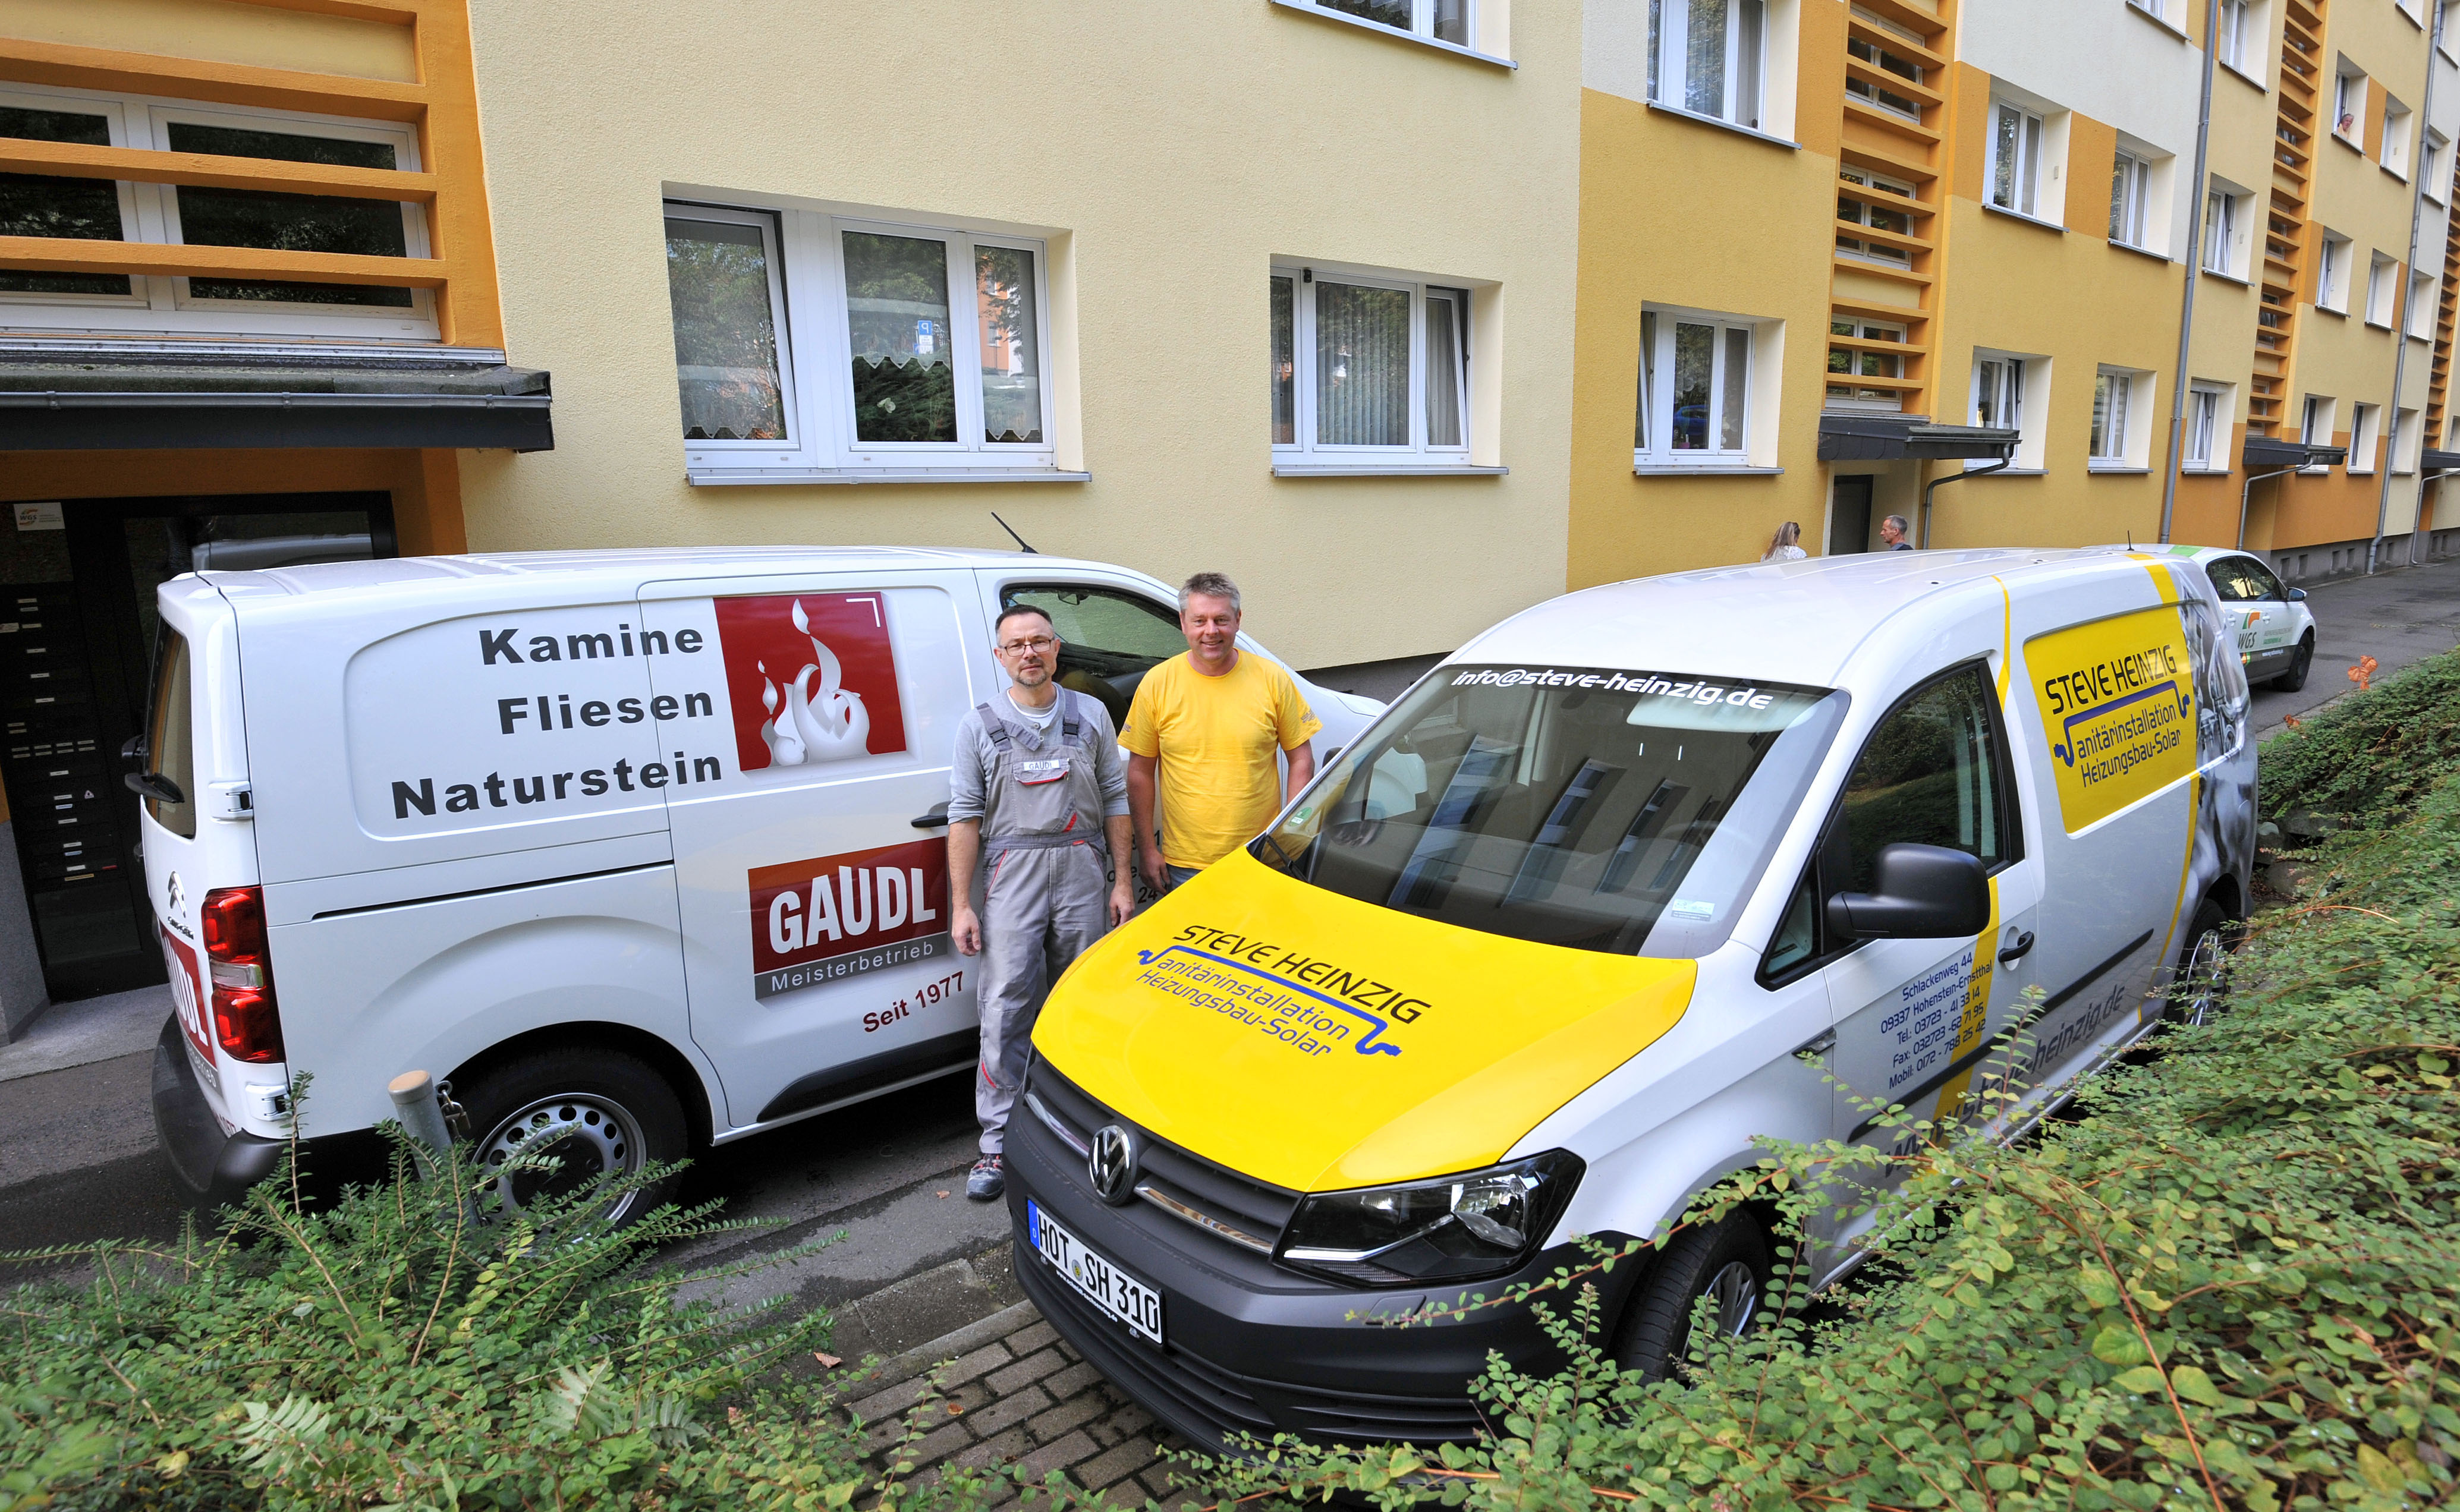 Sie waren mit anderen Firmen an den Badsanierungen beteiligt: Torsten Gaudl (Fliesen) und Steve Heinzig (Heizung/Sanitär).